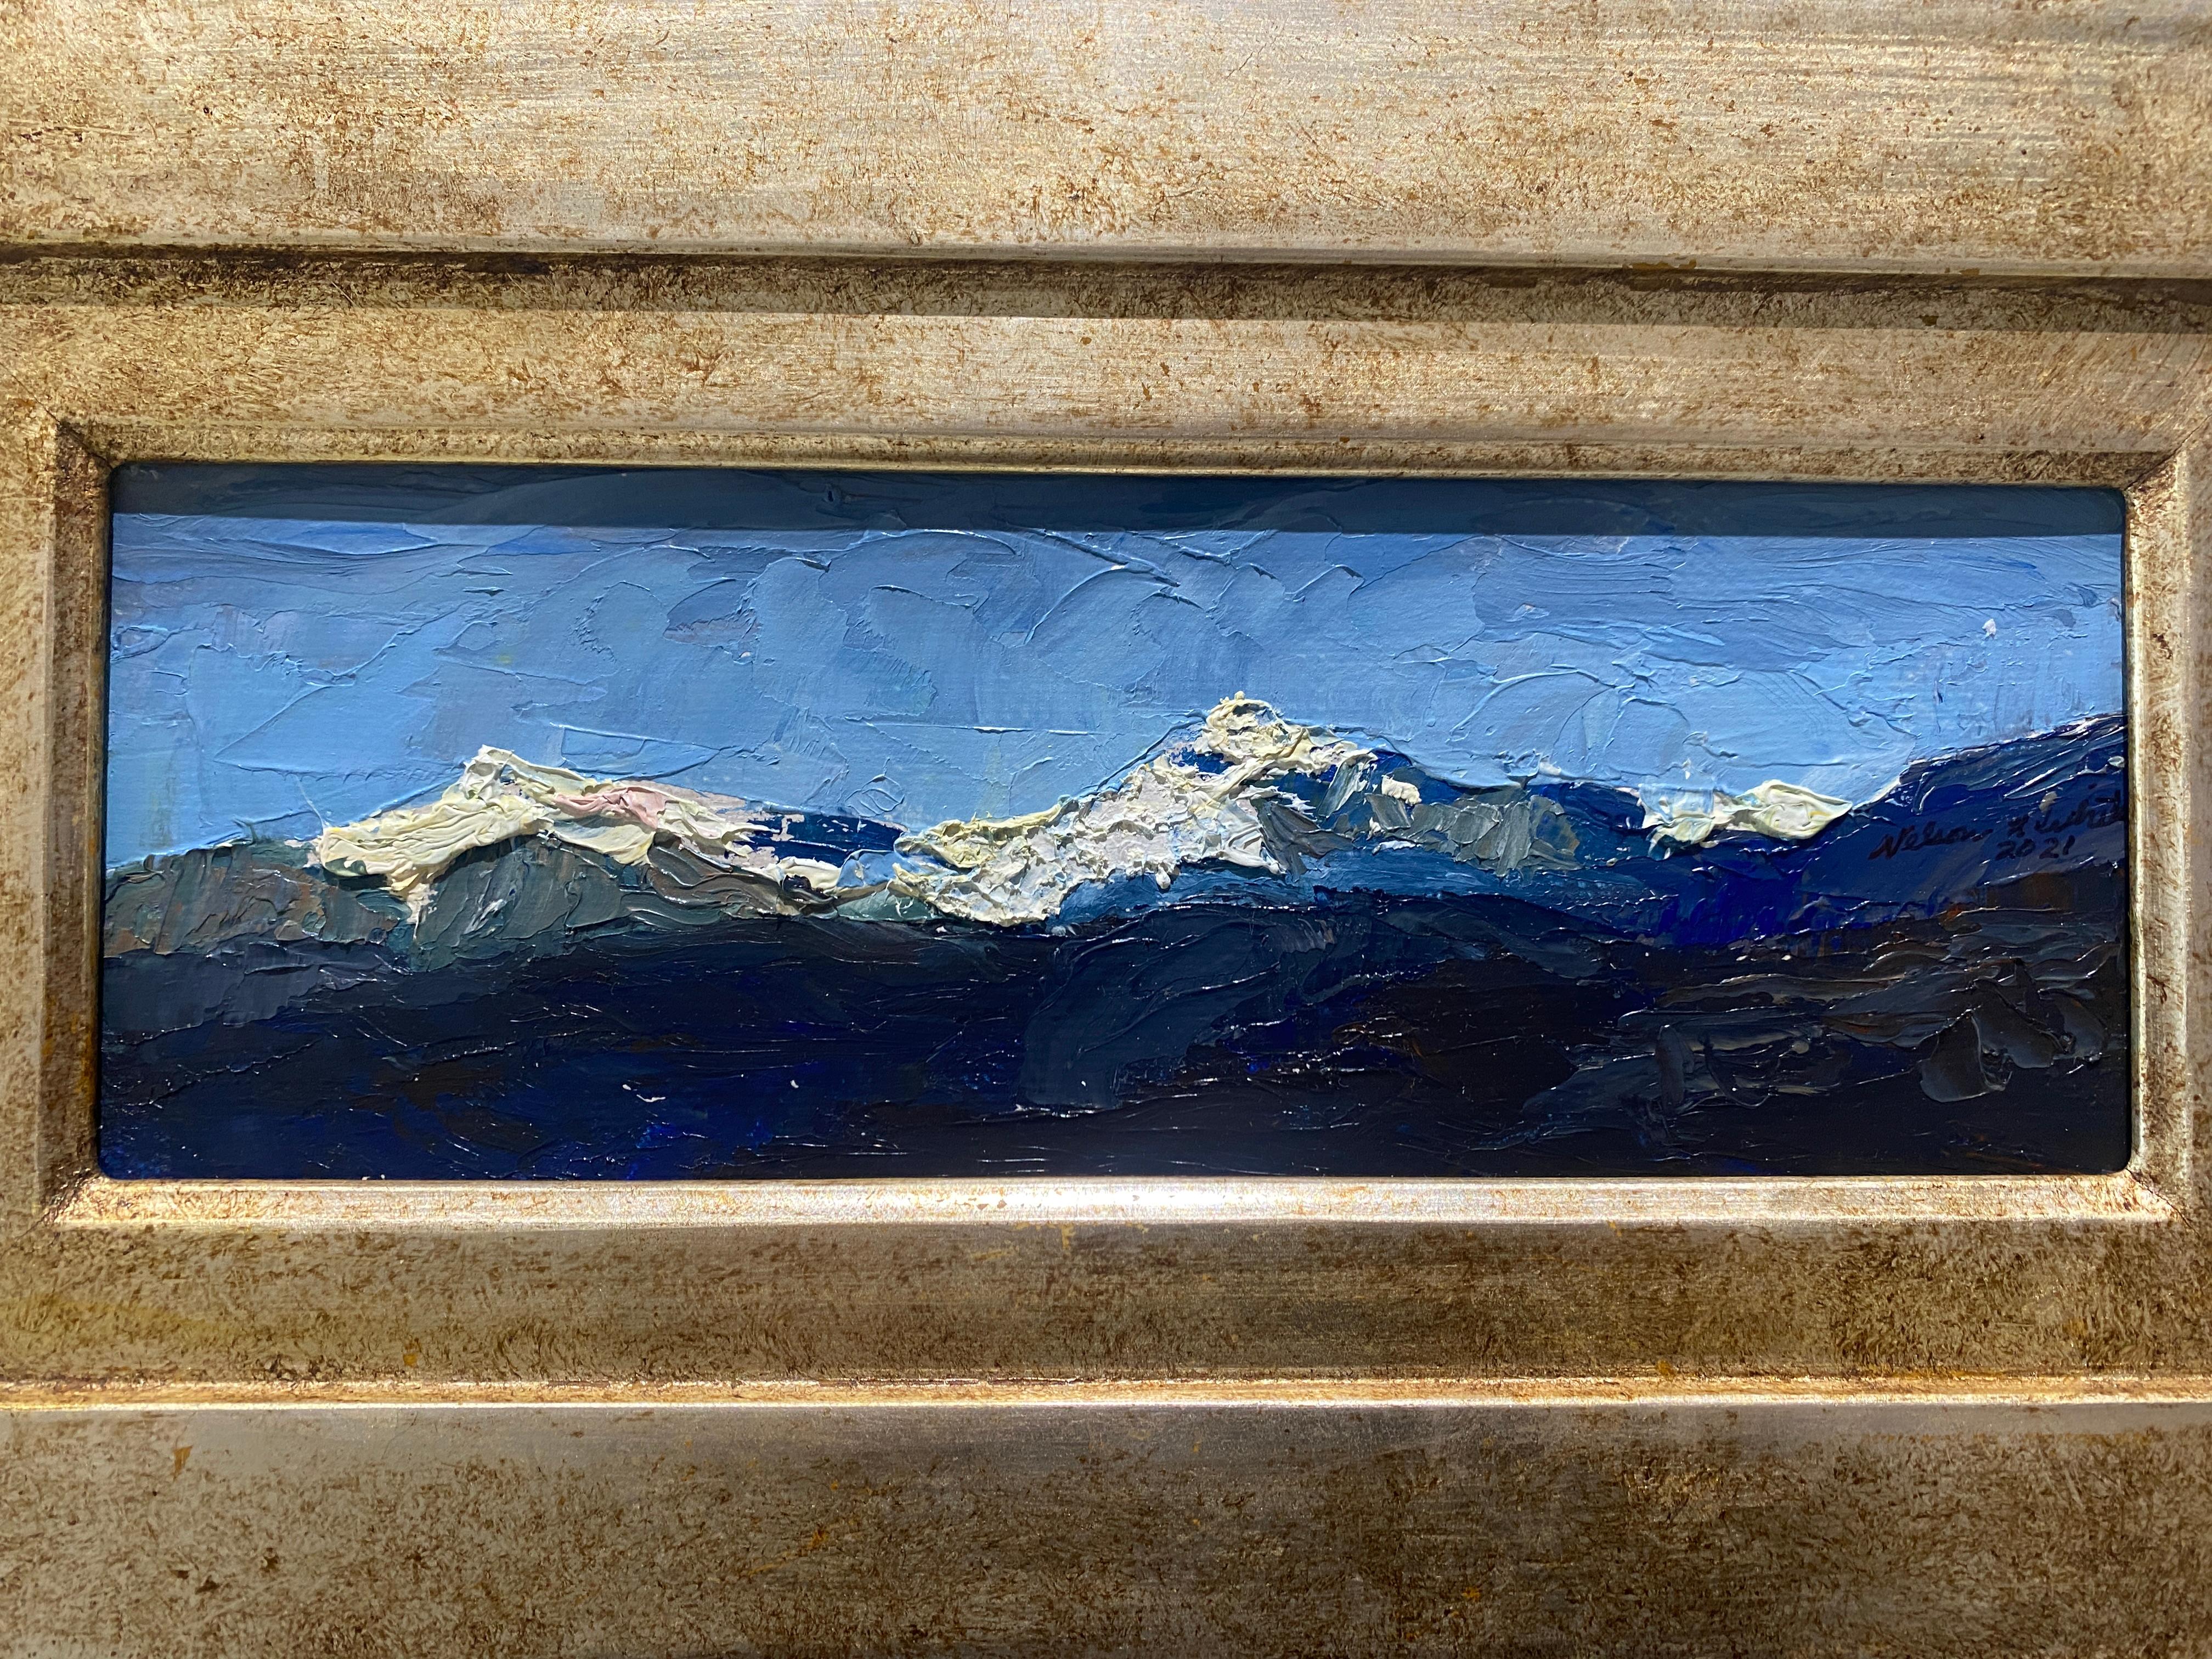 Une peinture à l'huile en plein air des Alpes Apuanes, montagnes du nord de la Toscane, en Italie, réalisée par Nelson Holbrook White, impressionniste américain de troisième génération. Peint avec une épaisse couche de peinture à l'huile et un